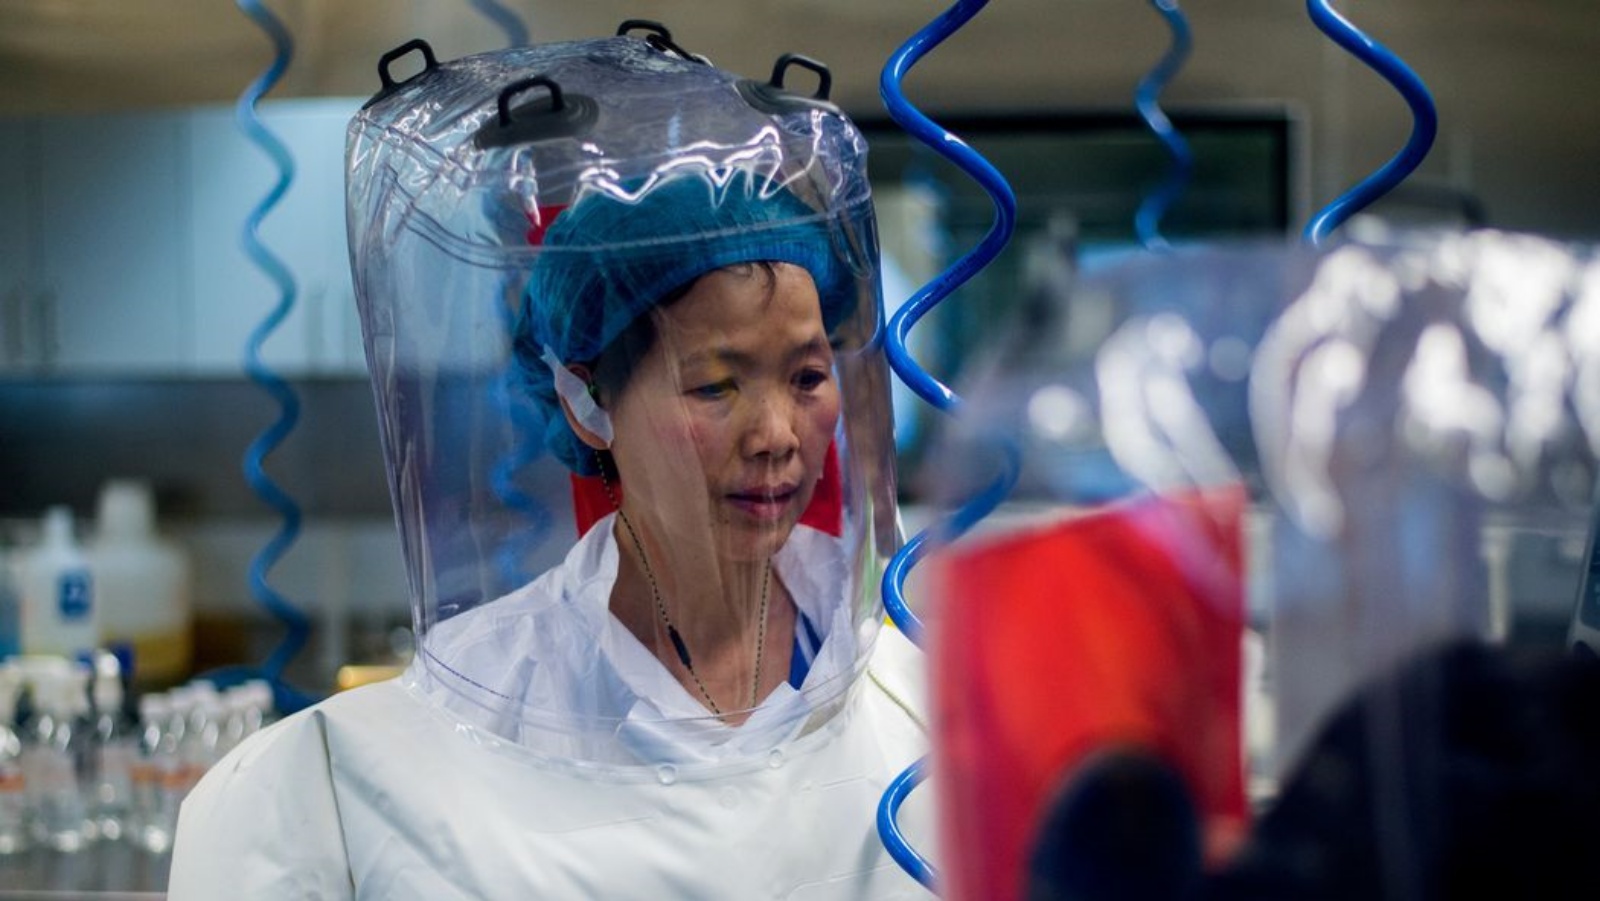 الدكتورة شي جينجلي، التي كان مختبرها في معهد ووهان لعلم الفيروسات مصدرًا مشتبهًا به لفيروس كورونا، في عام 2017